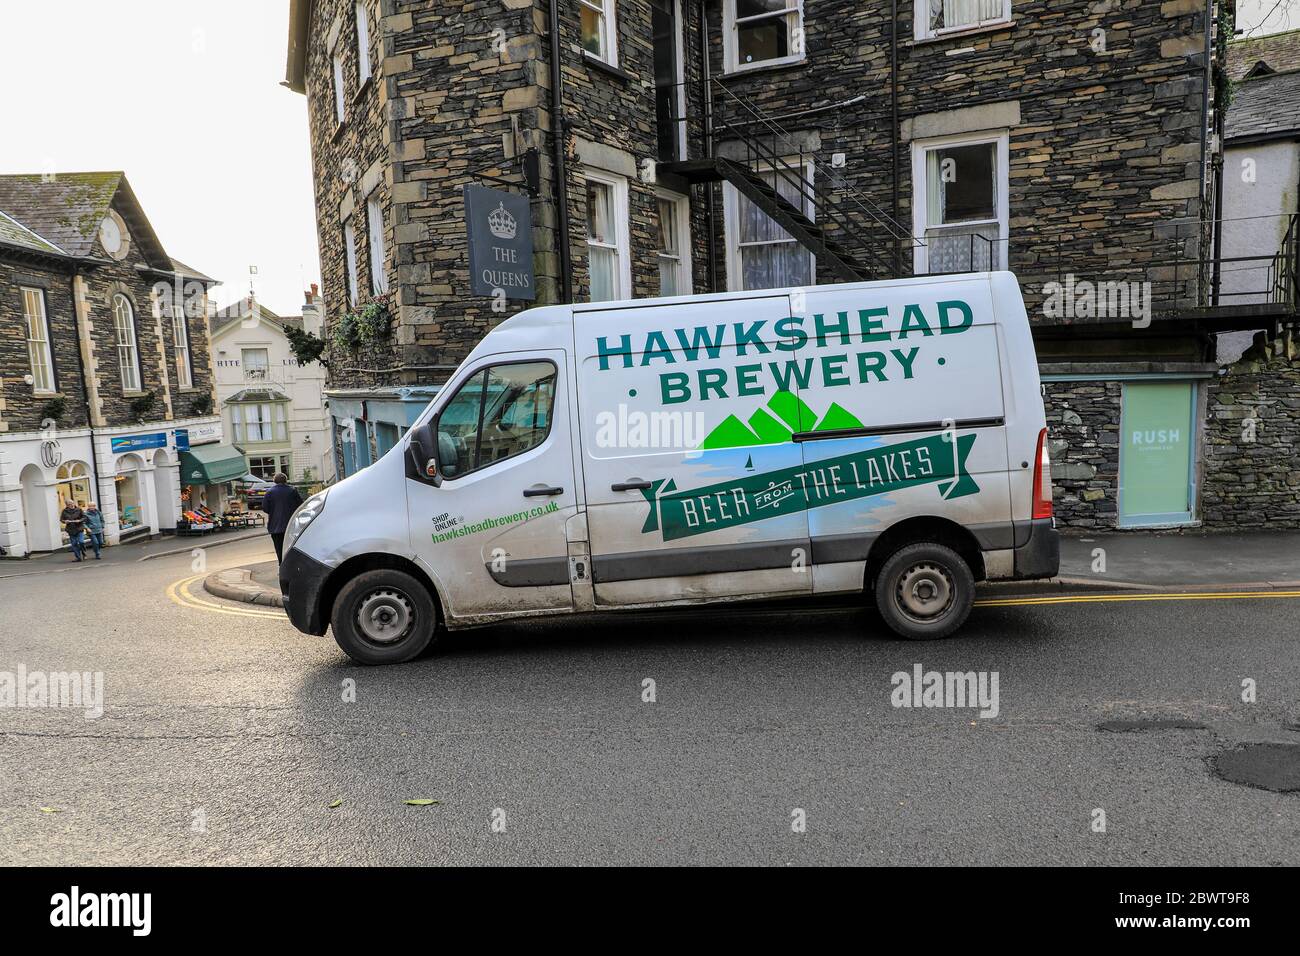 Une camionnette de livraison de la brasserie Hawkshead à Ambleside, dans le parc national du district de English Lake, Cumbria, Angleterre, Royaume-Uni Banque D'Images